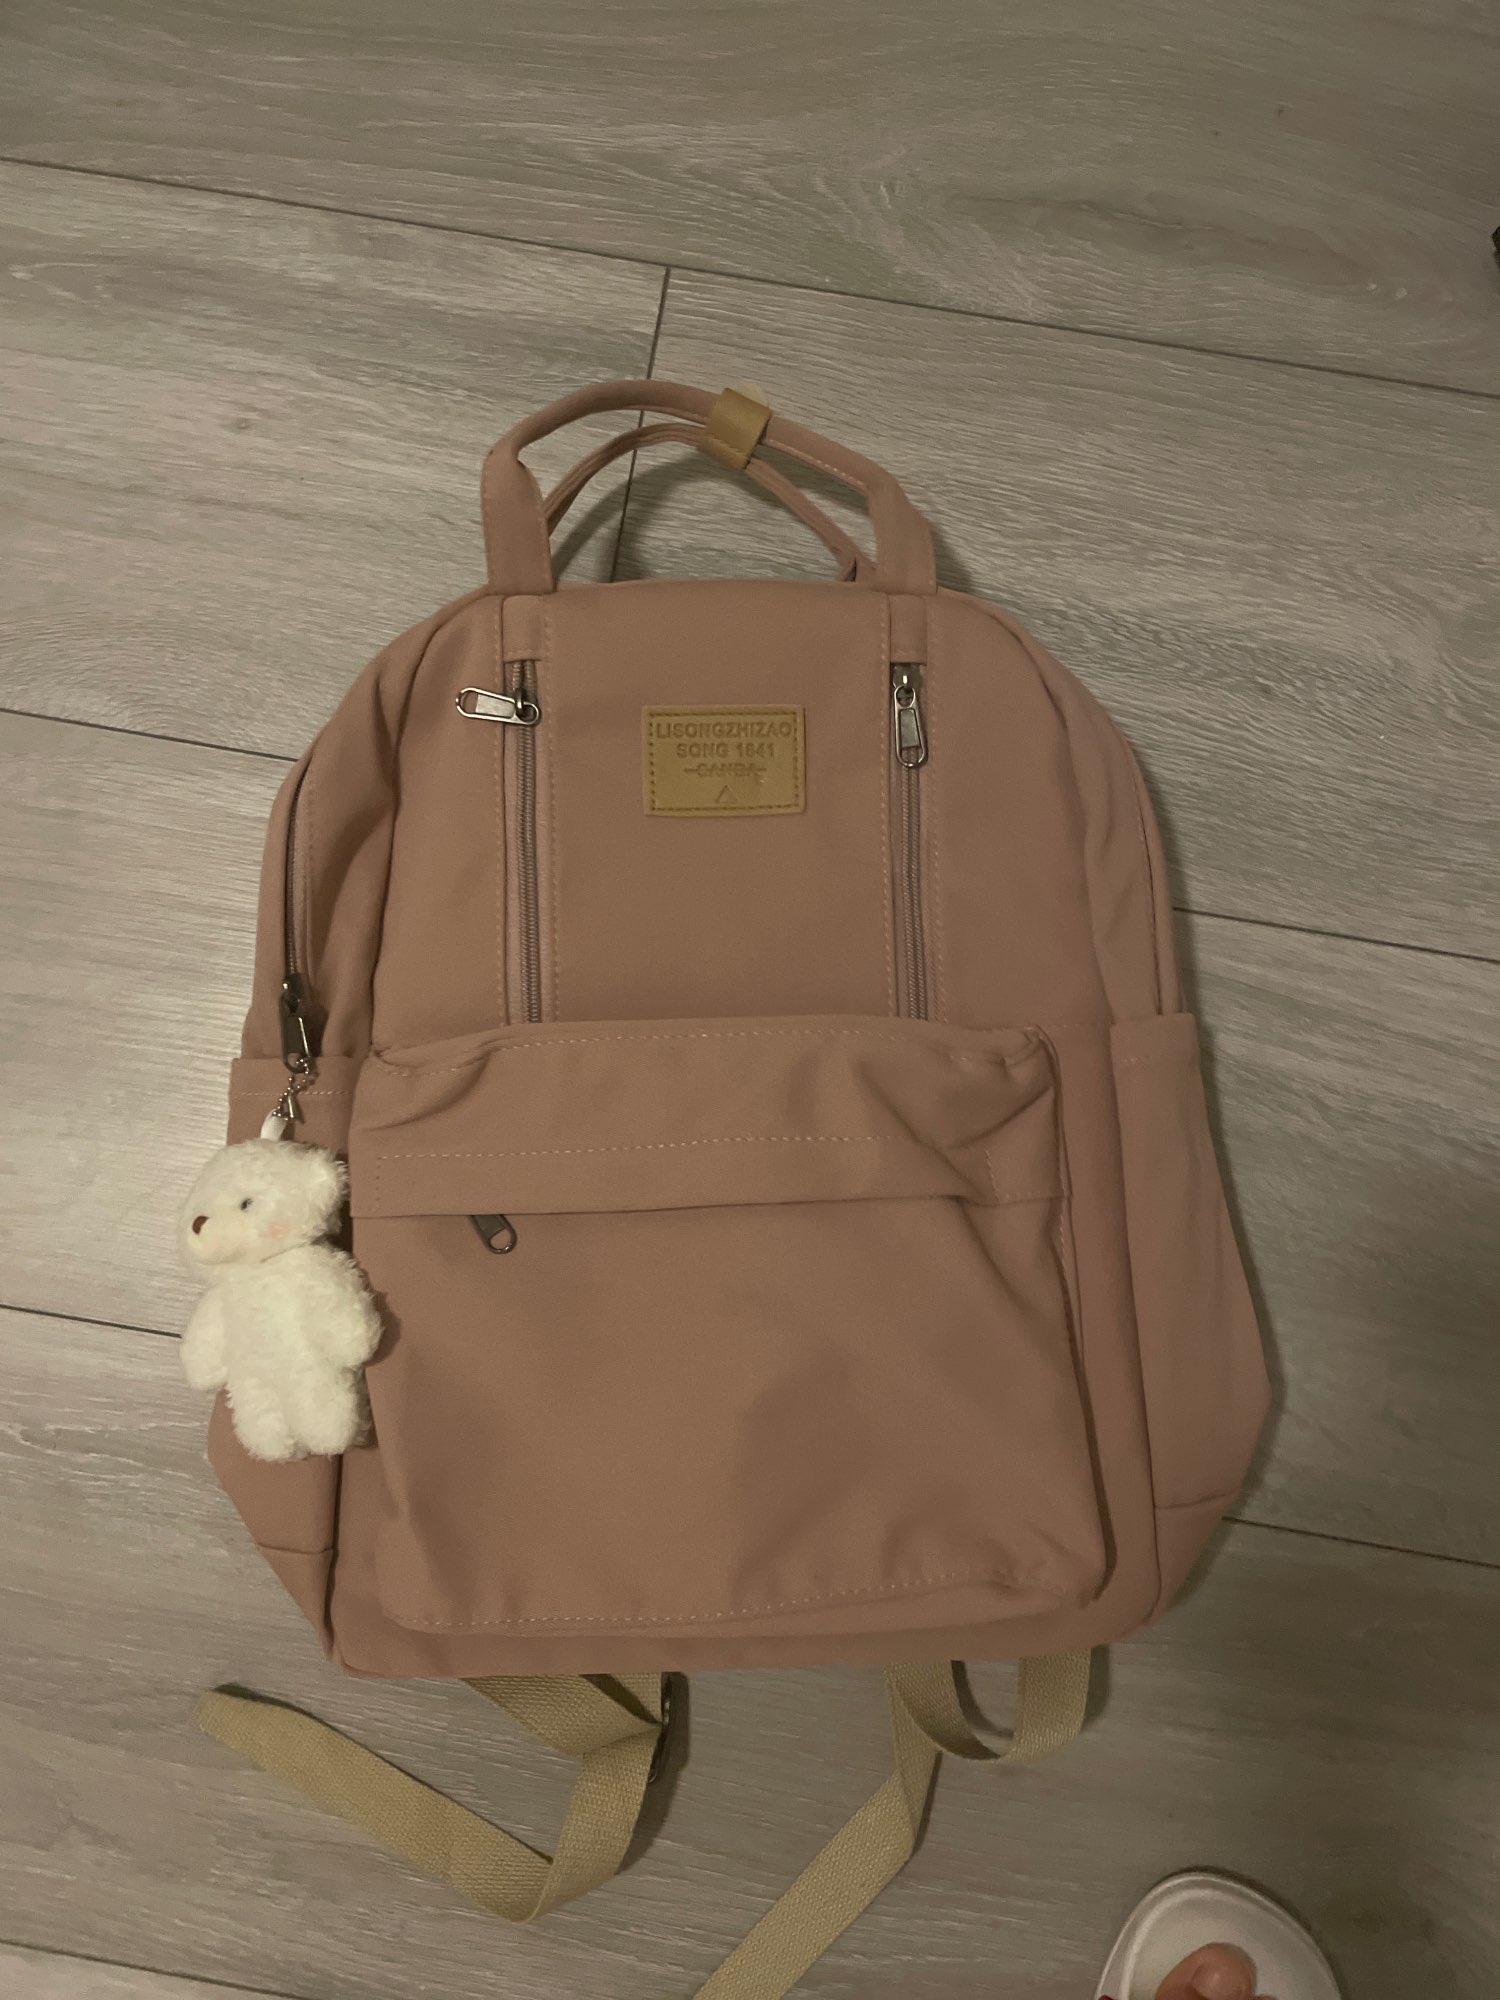 JULYCCINO Multifunction Waterproof Buckle Backpack Korean Style School Bag  Student Shoulder Bag Teenage Girls Laptop Backpacks